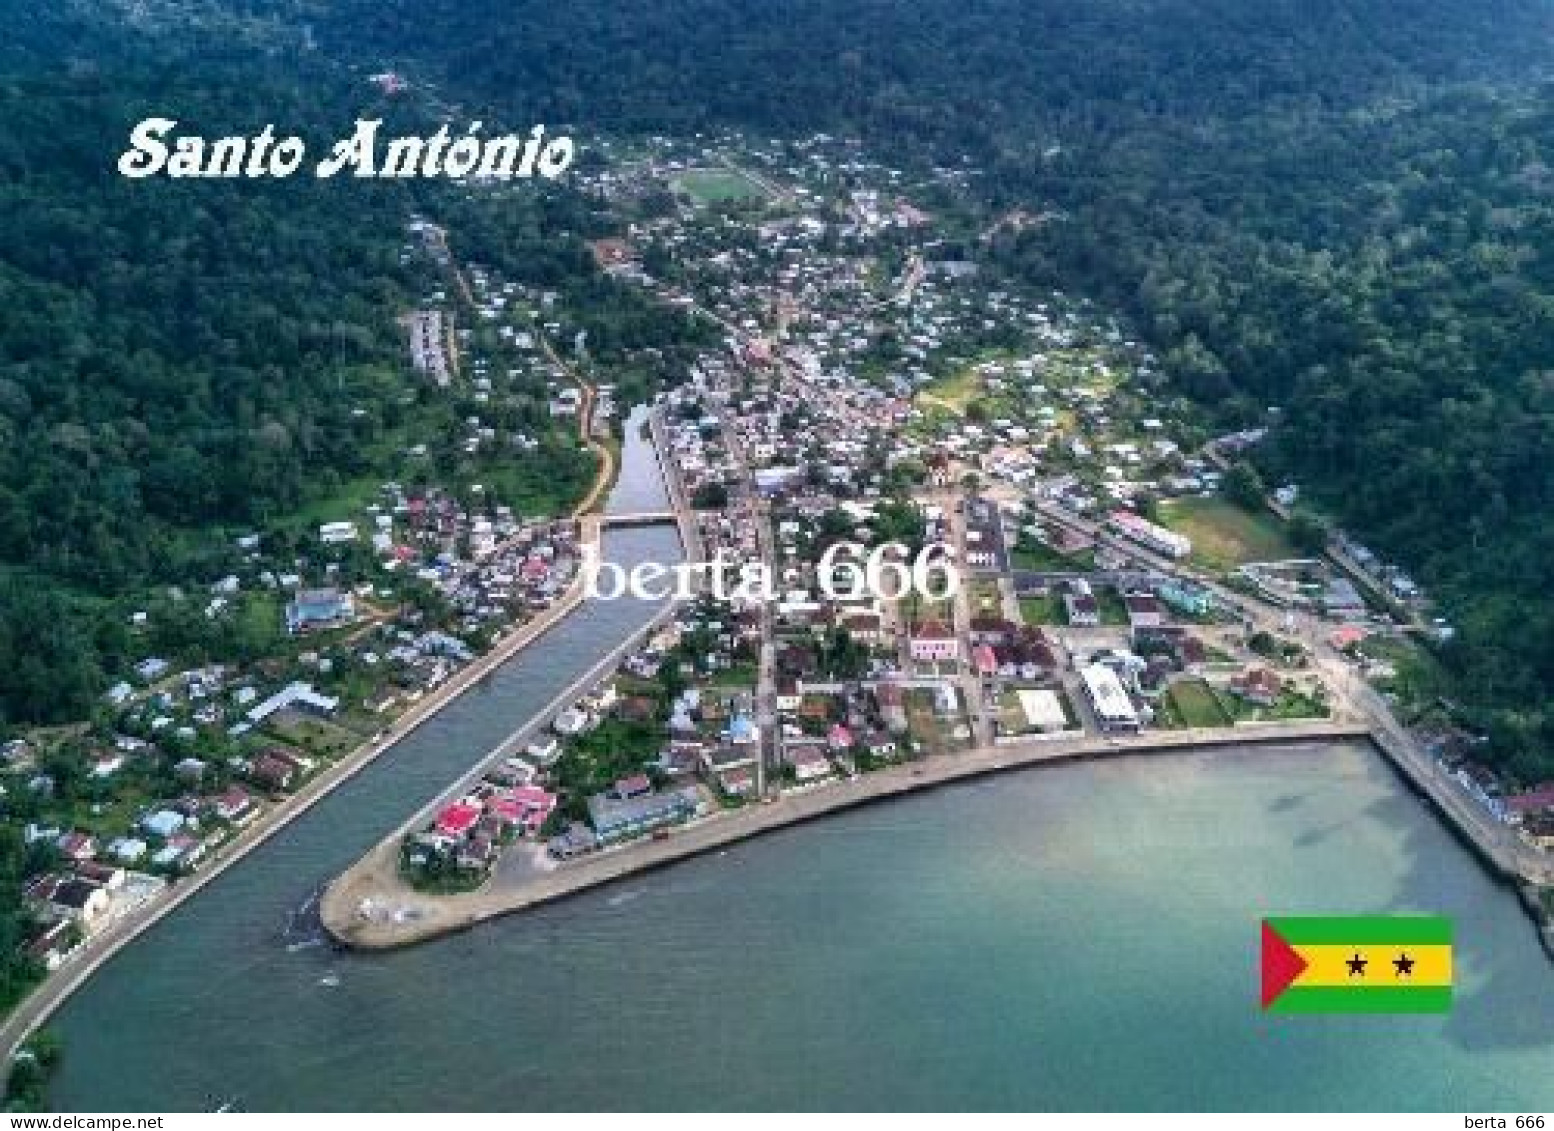 Principe Island Santo Antonio Aerial View Sao Tome And Principe New Postcard - Sao Tome And Principe